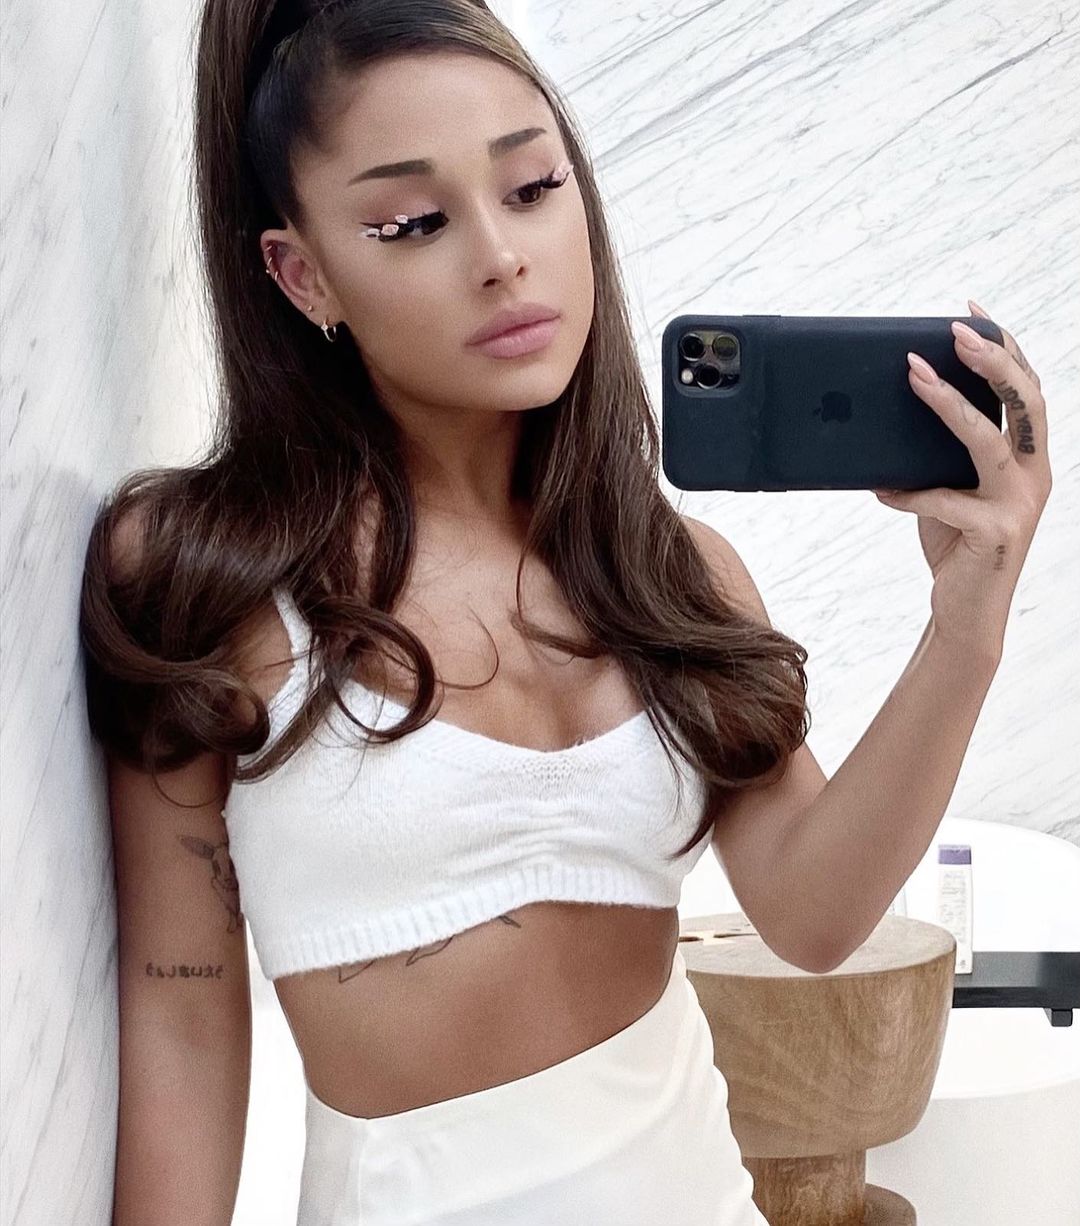 Ariana Grande Tattoos: How Many She Has, Photos, Meanings